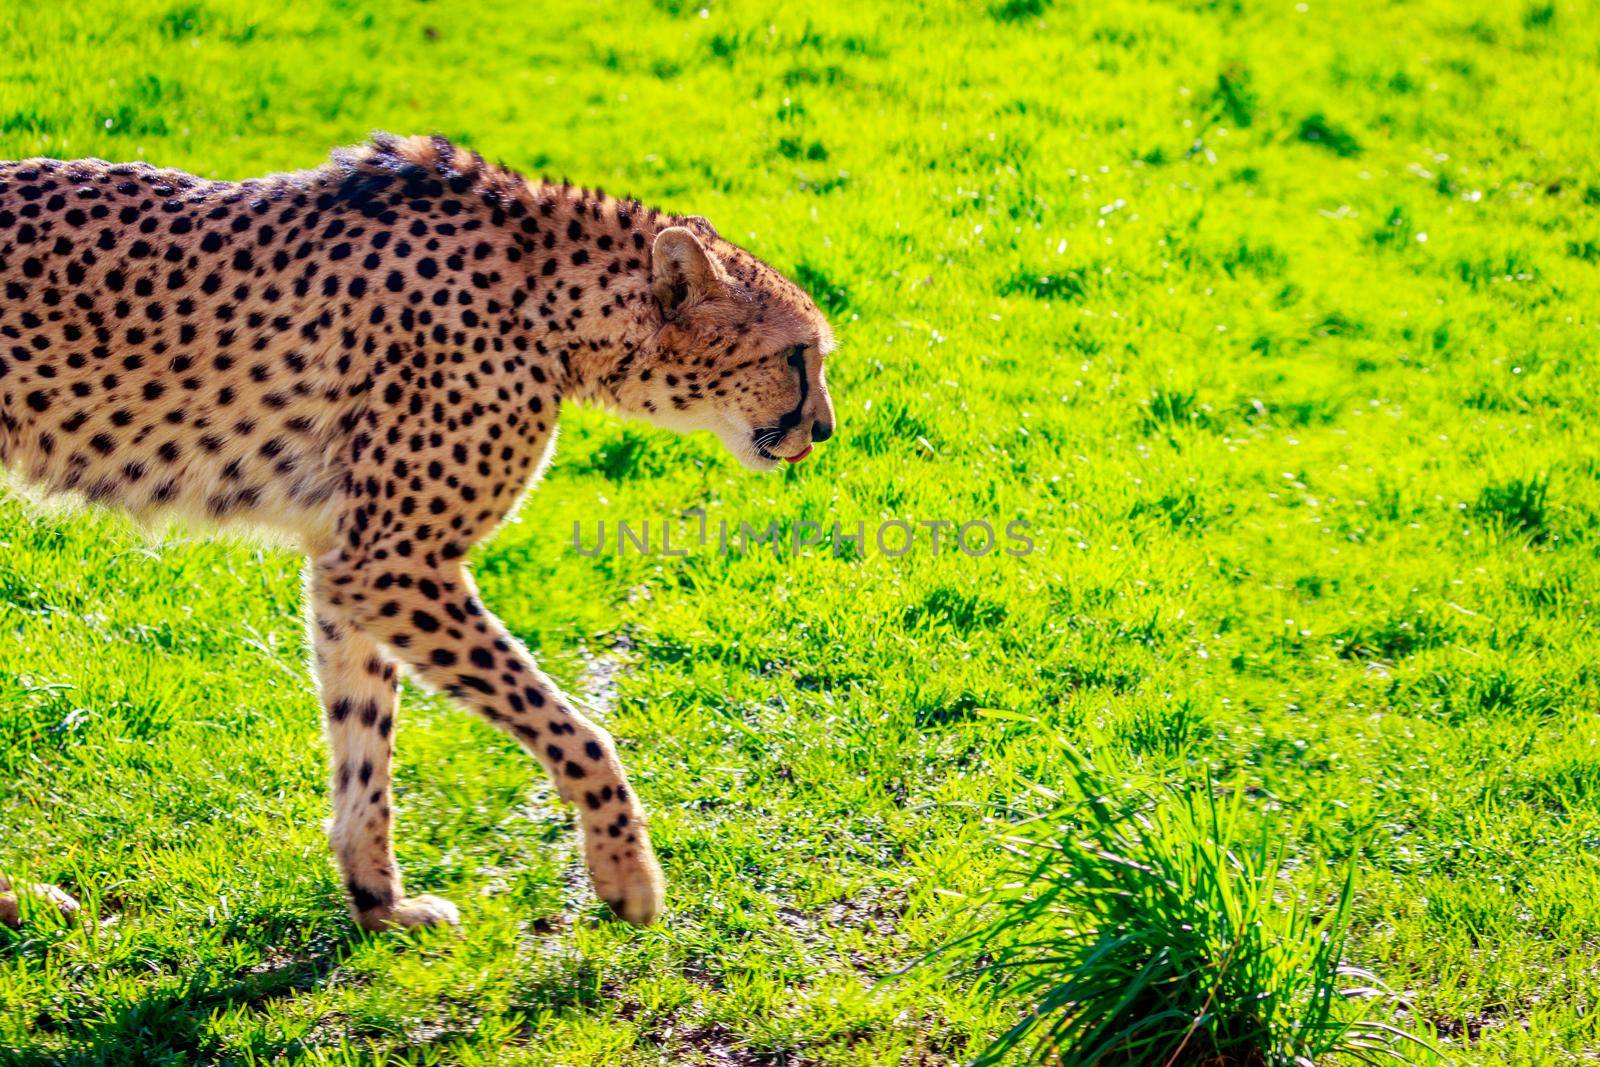 An Amur leopard walks on the grass.